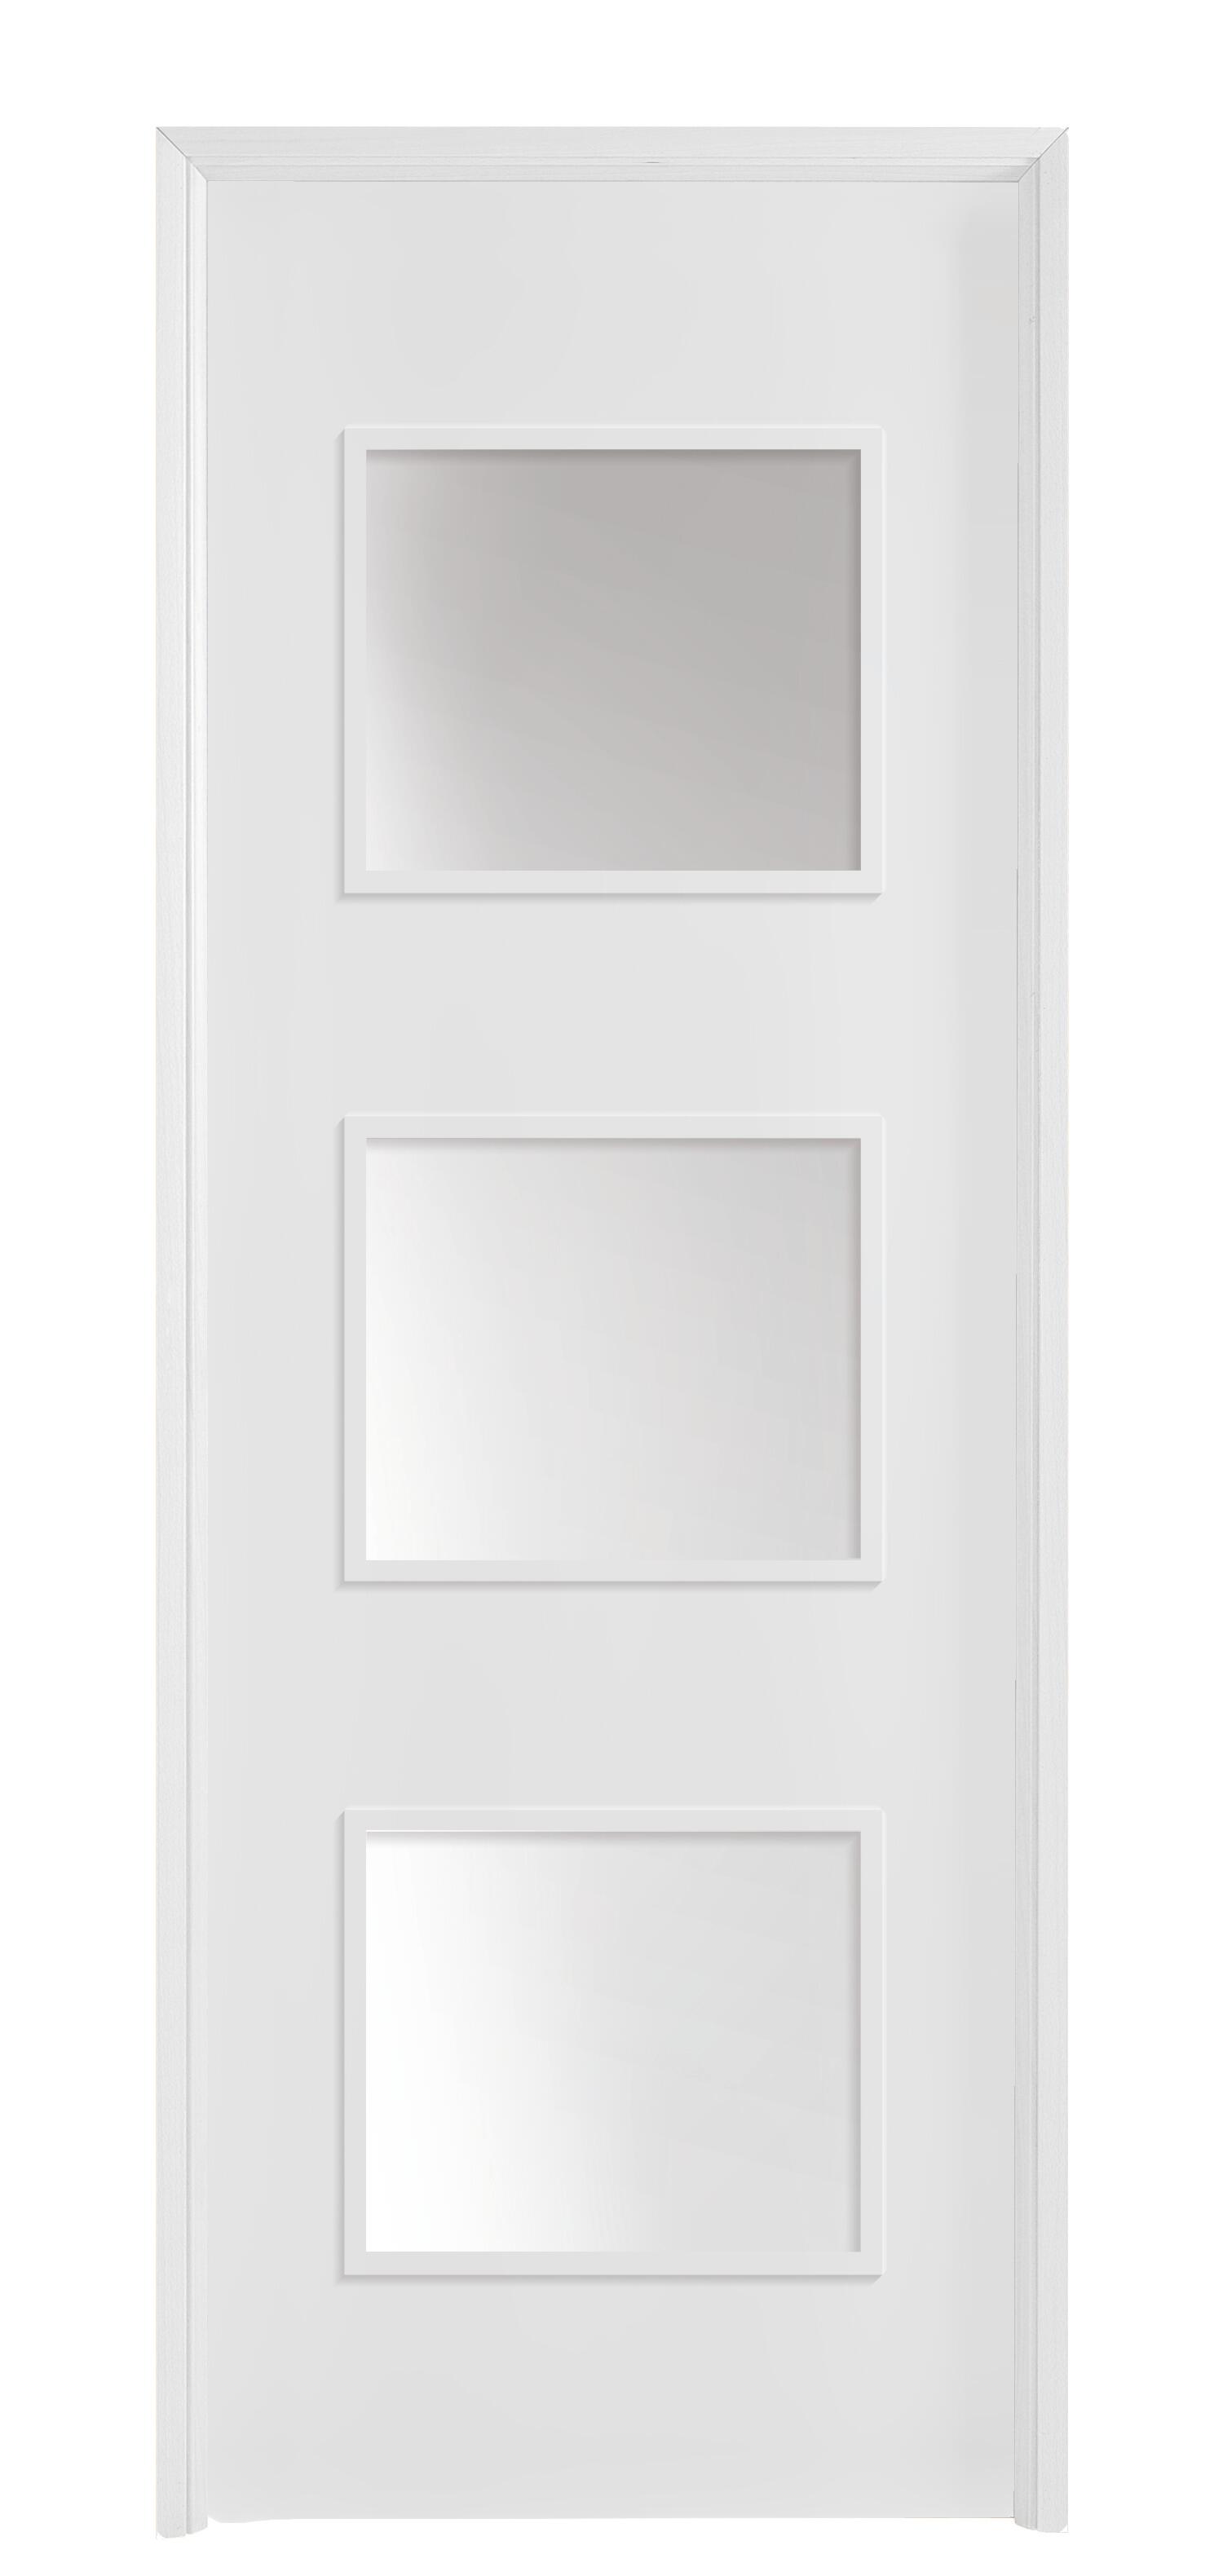 Puerta con cristal bari plus blanca 7x2x72,5 cm i